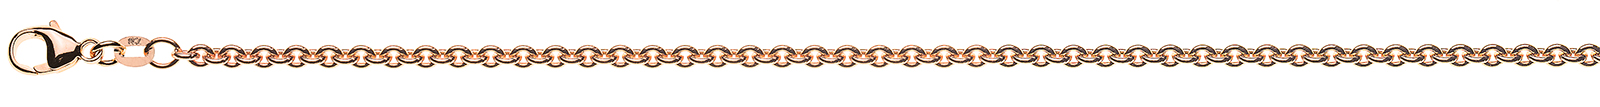 AURONOS Prestige Bracelet ancre rond or rose 18K 19cm 3mm